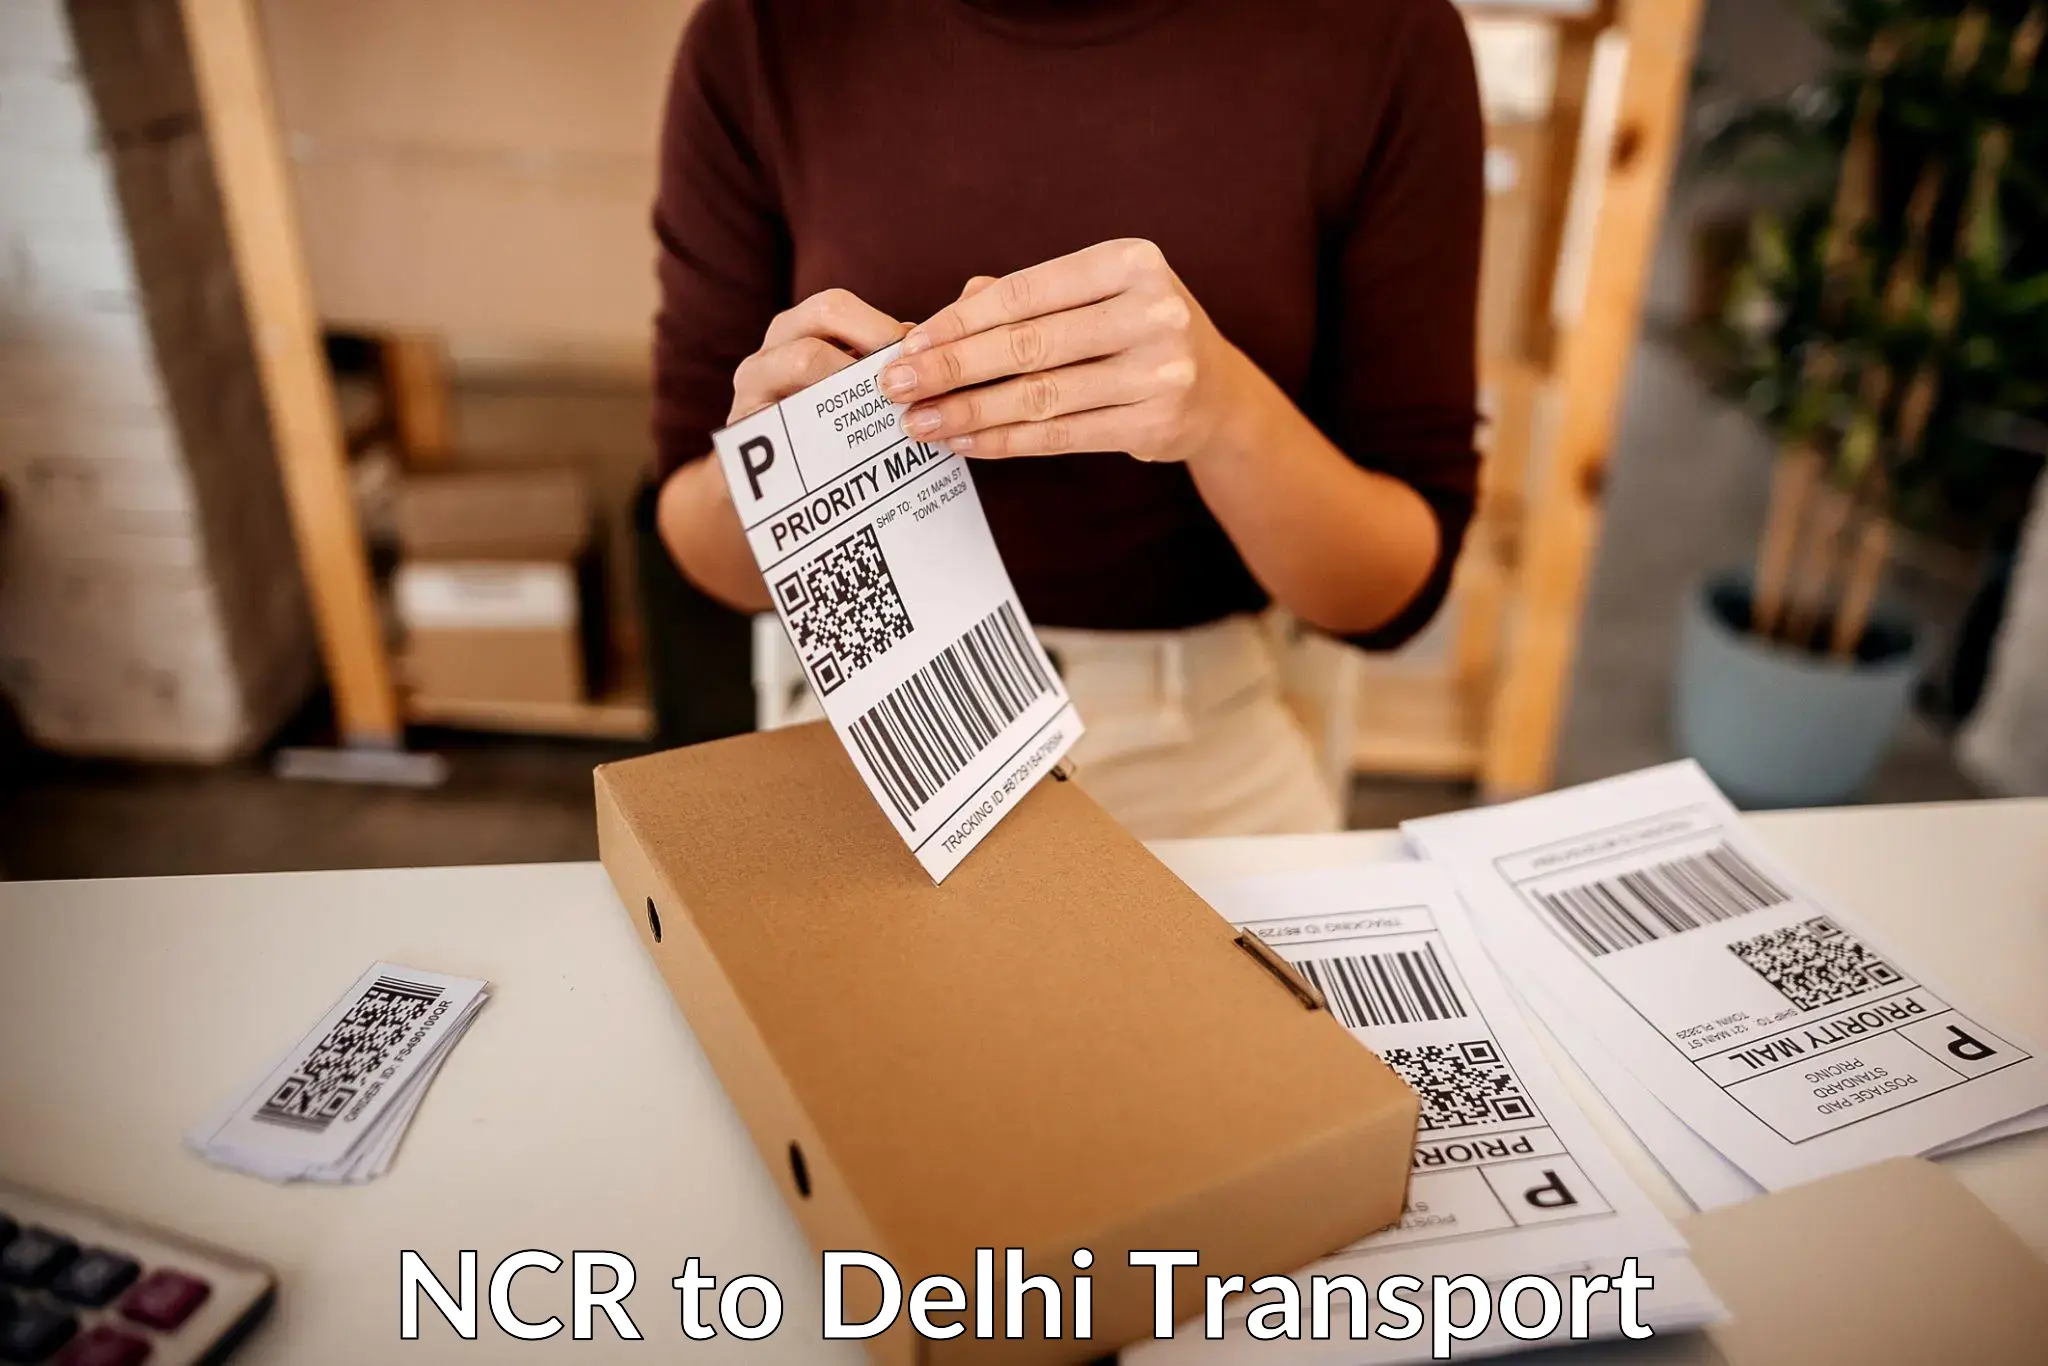 Daily parcel service transport NCR to Kalkaji